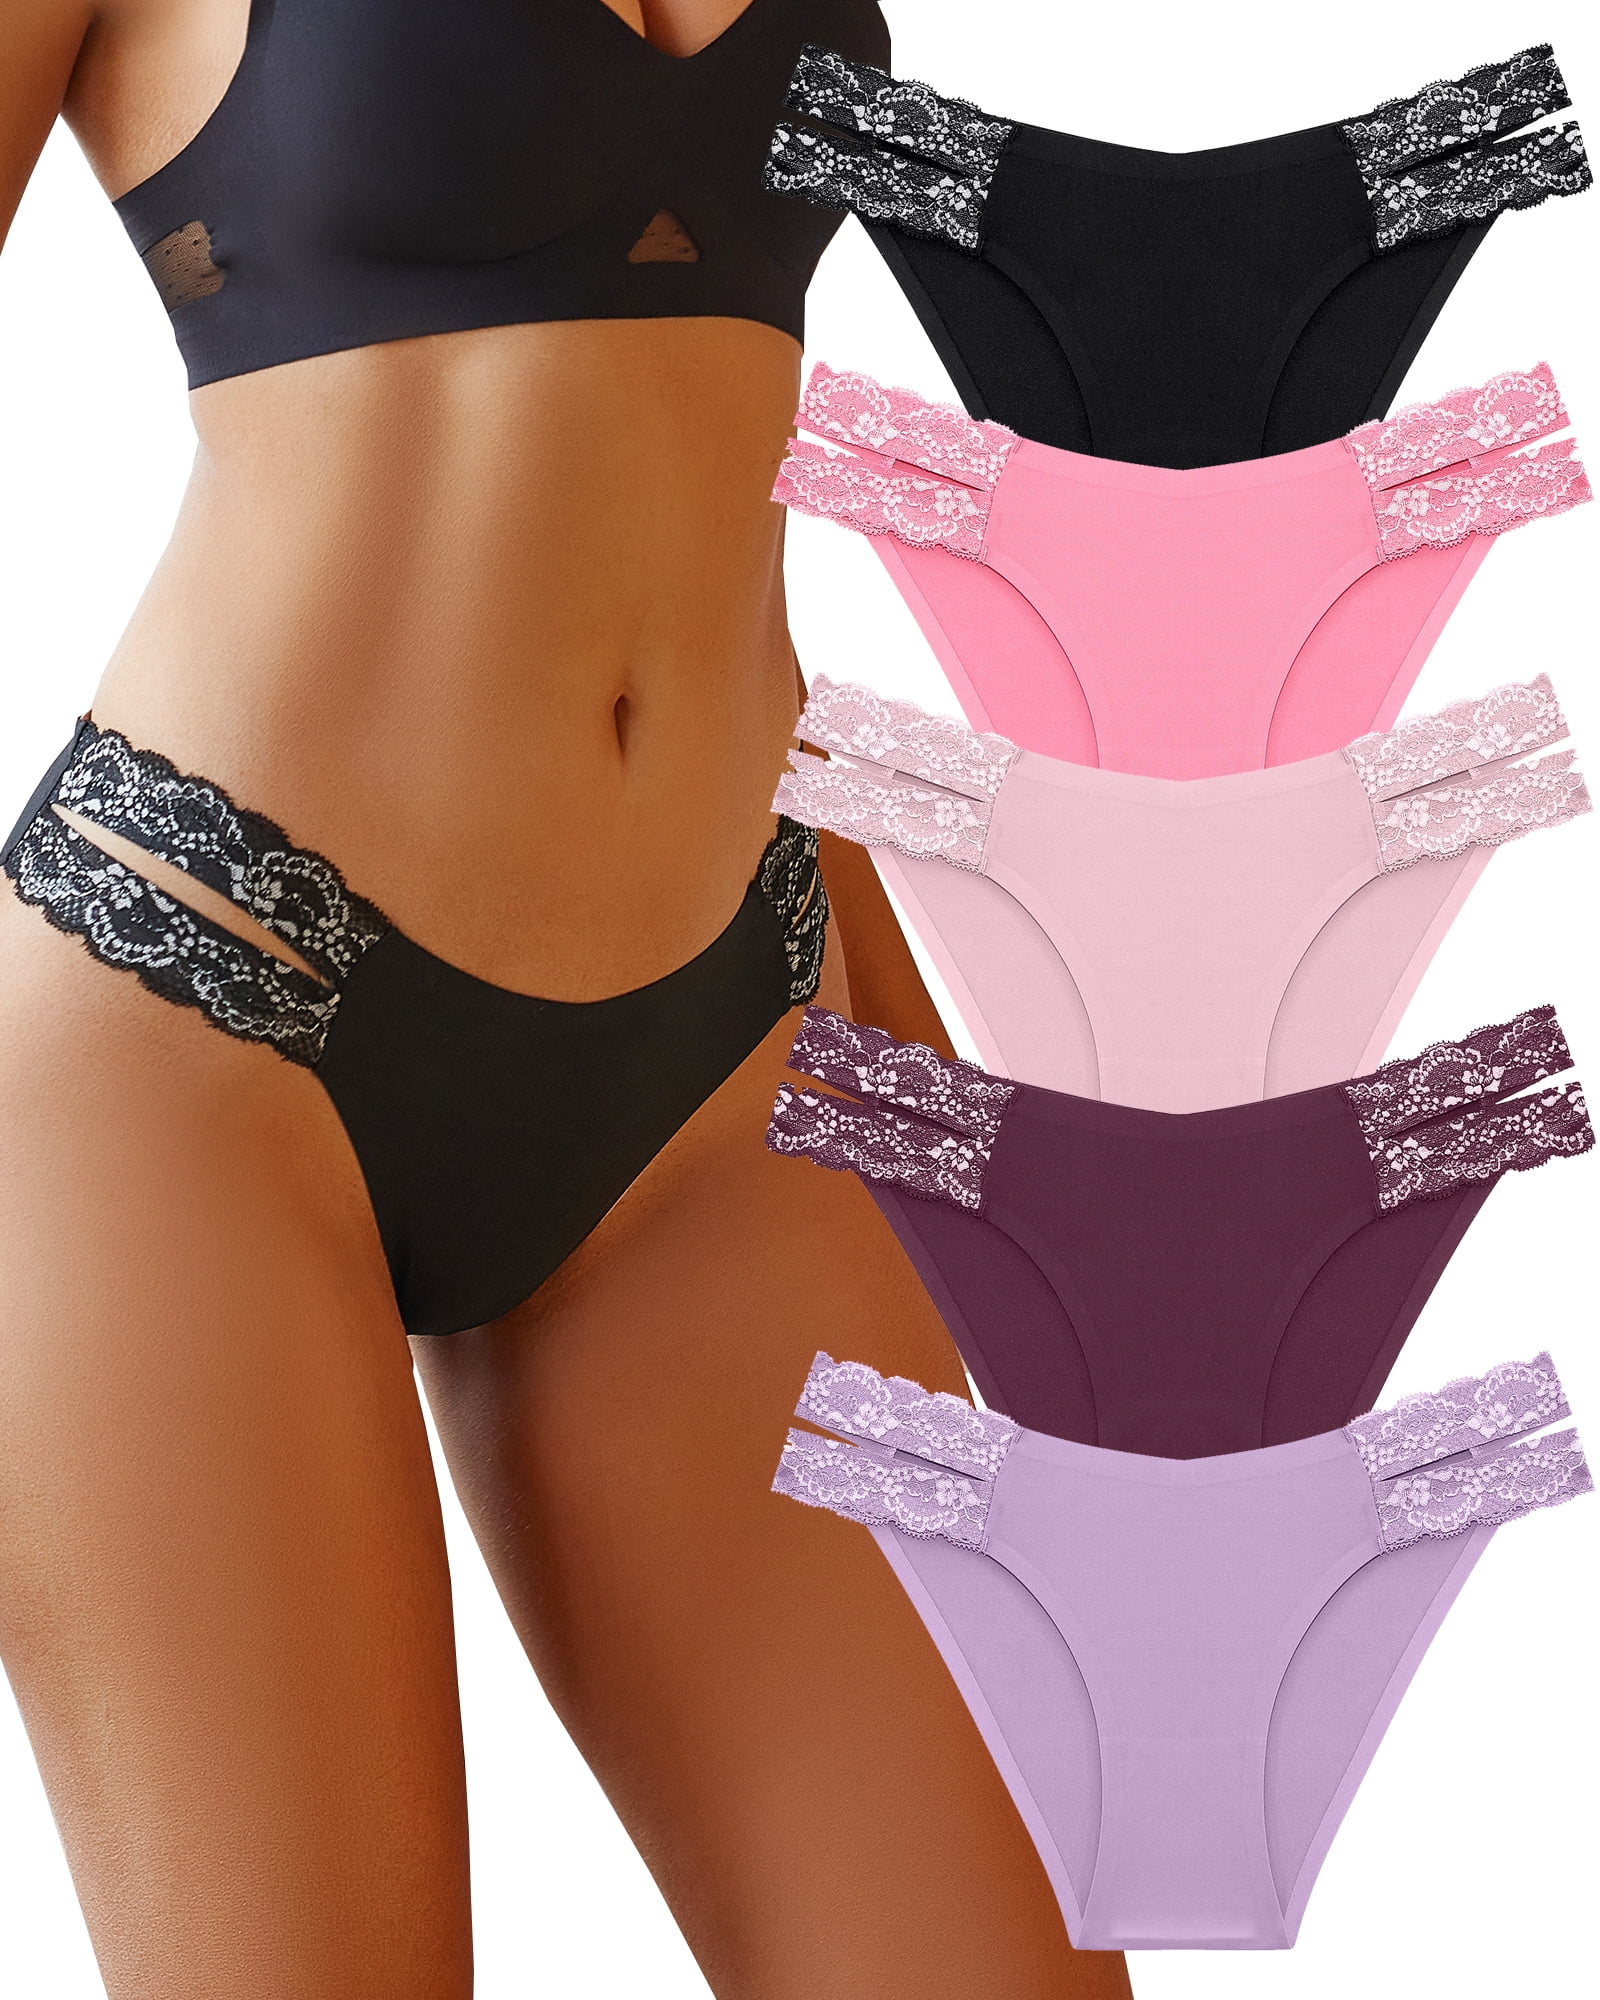 Joyspun 6 Pack Seamless Panties (as1, alpha, x_s, regular, regular, Bikini  - Bright Assortment) at  Women's Clothing store